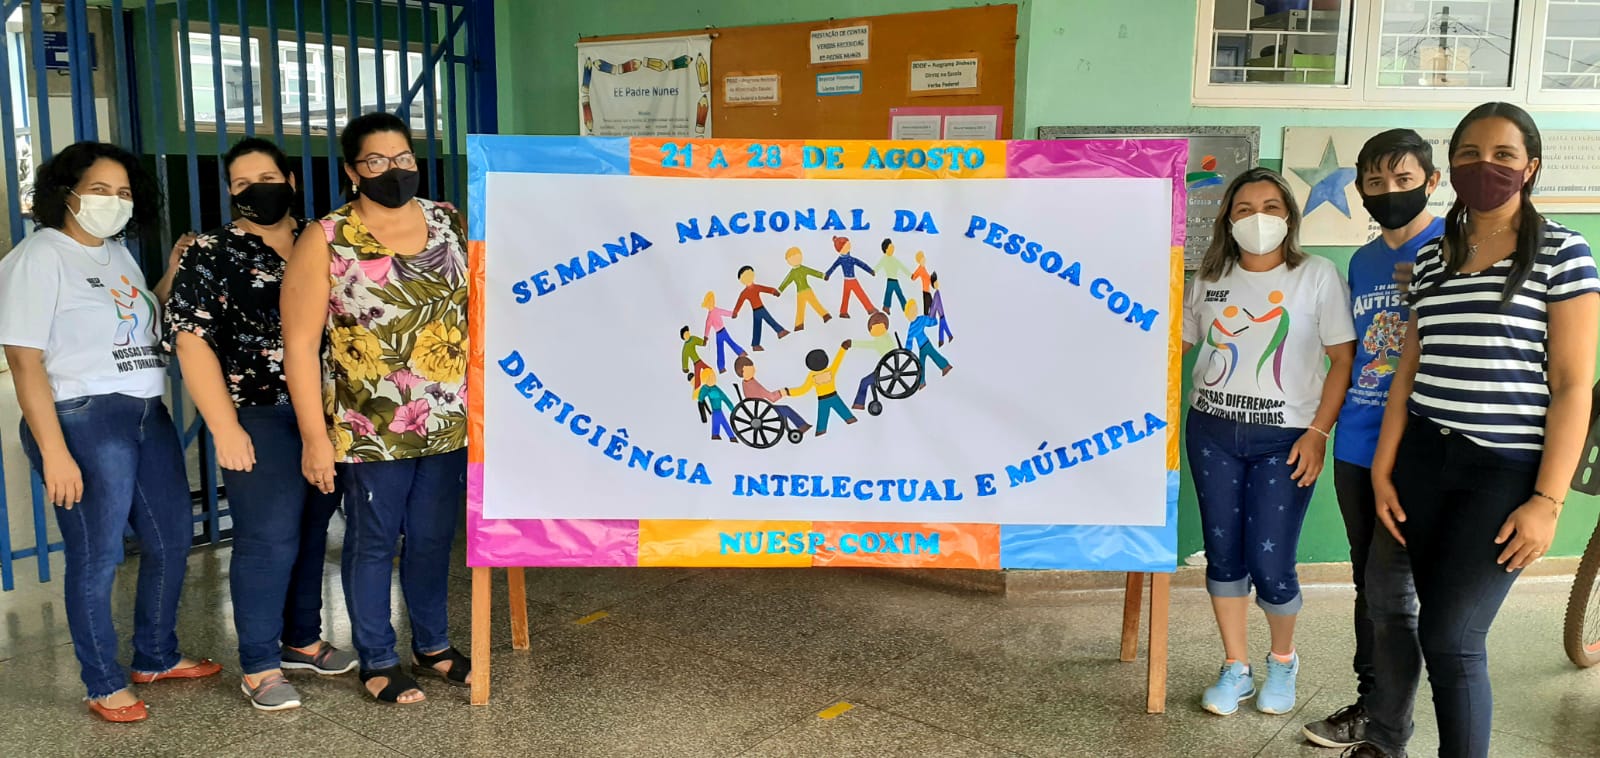 Escolas jurisdicionadas a CRE4 realizam ações durante a Semana Nacional da Pessoa Com Deficiência Intelectual e Múltipla.